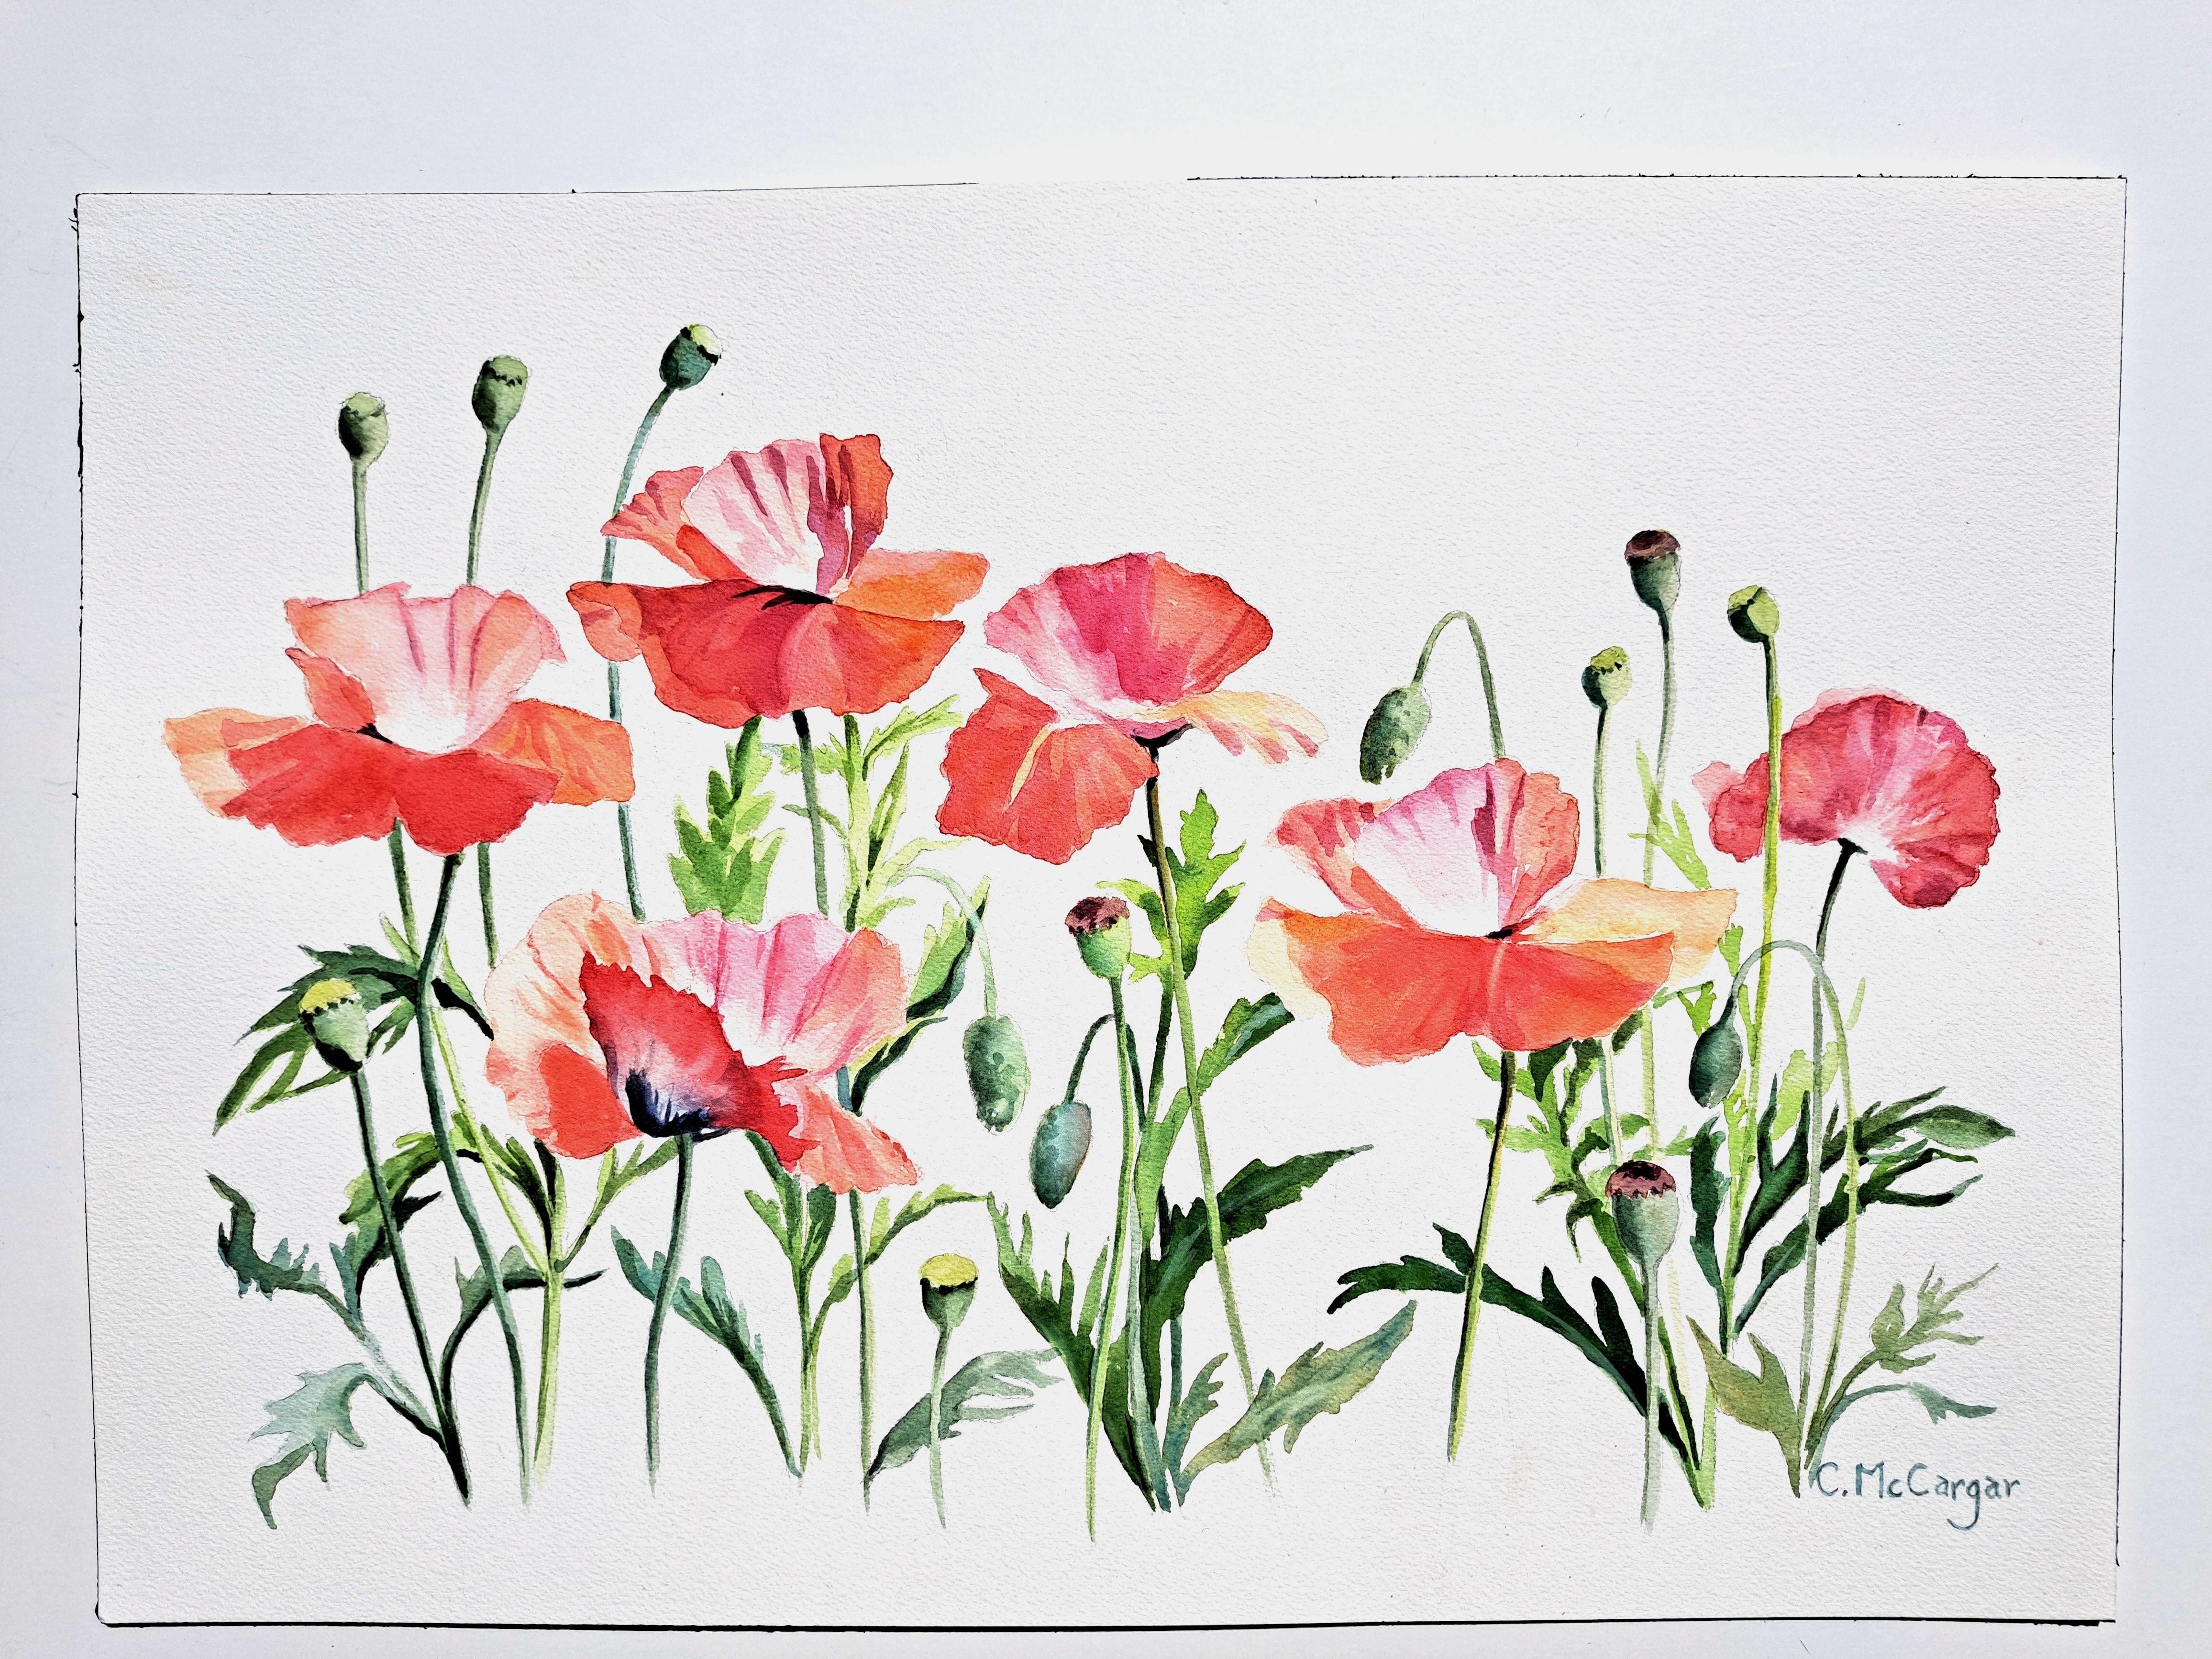 <p>Kommentare des Künstlers<br>Die Künstlerin Catherine McCargar illustriert verführerische rote Blumen vor einem weißen Hintergrund. Sie fängt die Zartheit und Transparenz wunderschöner Mohnblumen ein, die ihr in einem öffentlichen Garten in der